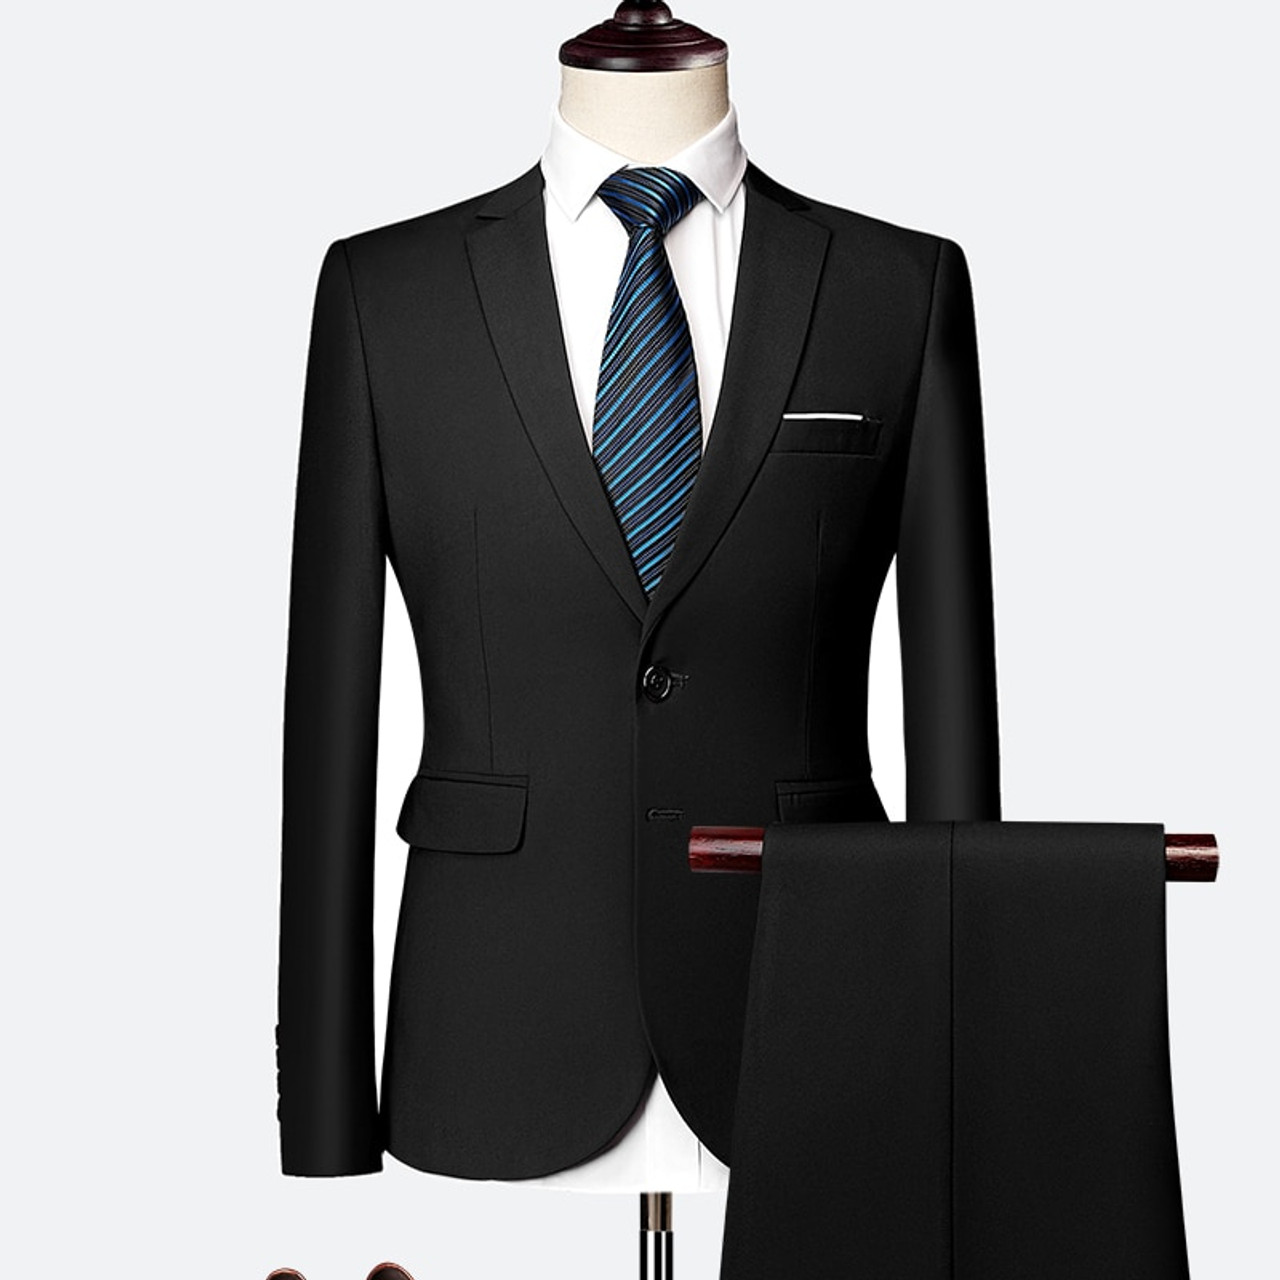 Men 2 Piece Suit Wedding Royal Blue Suit Office Elegant Suit Sainly– SAINLY